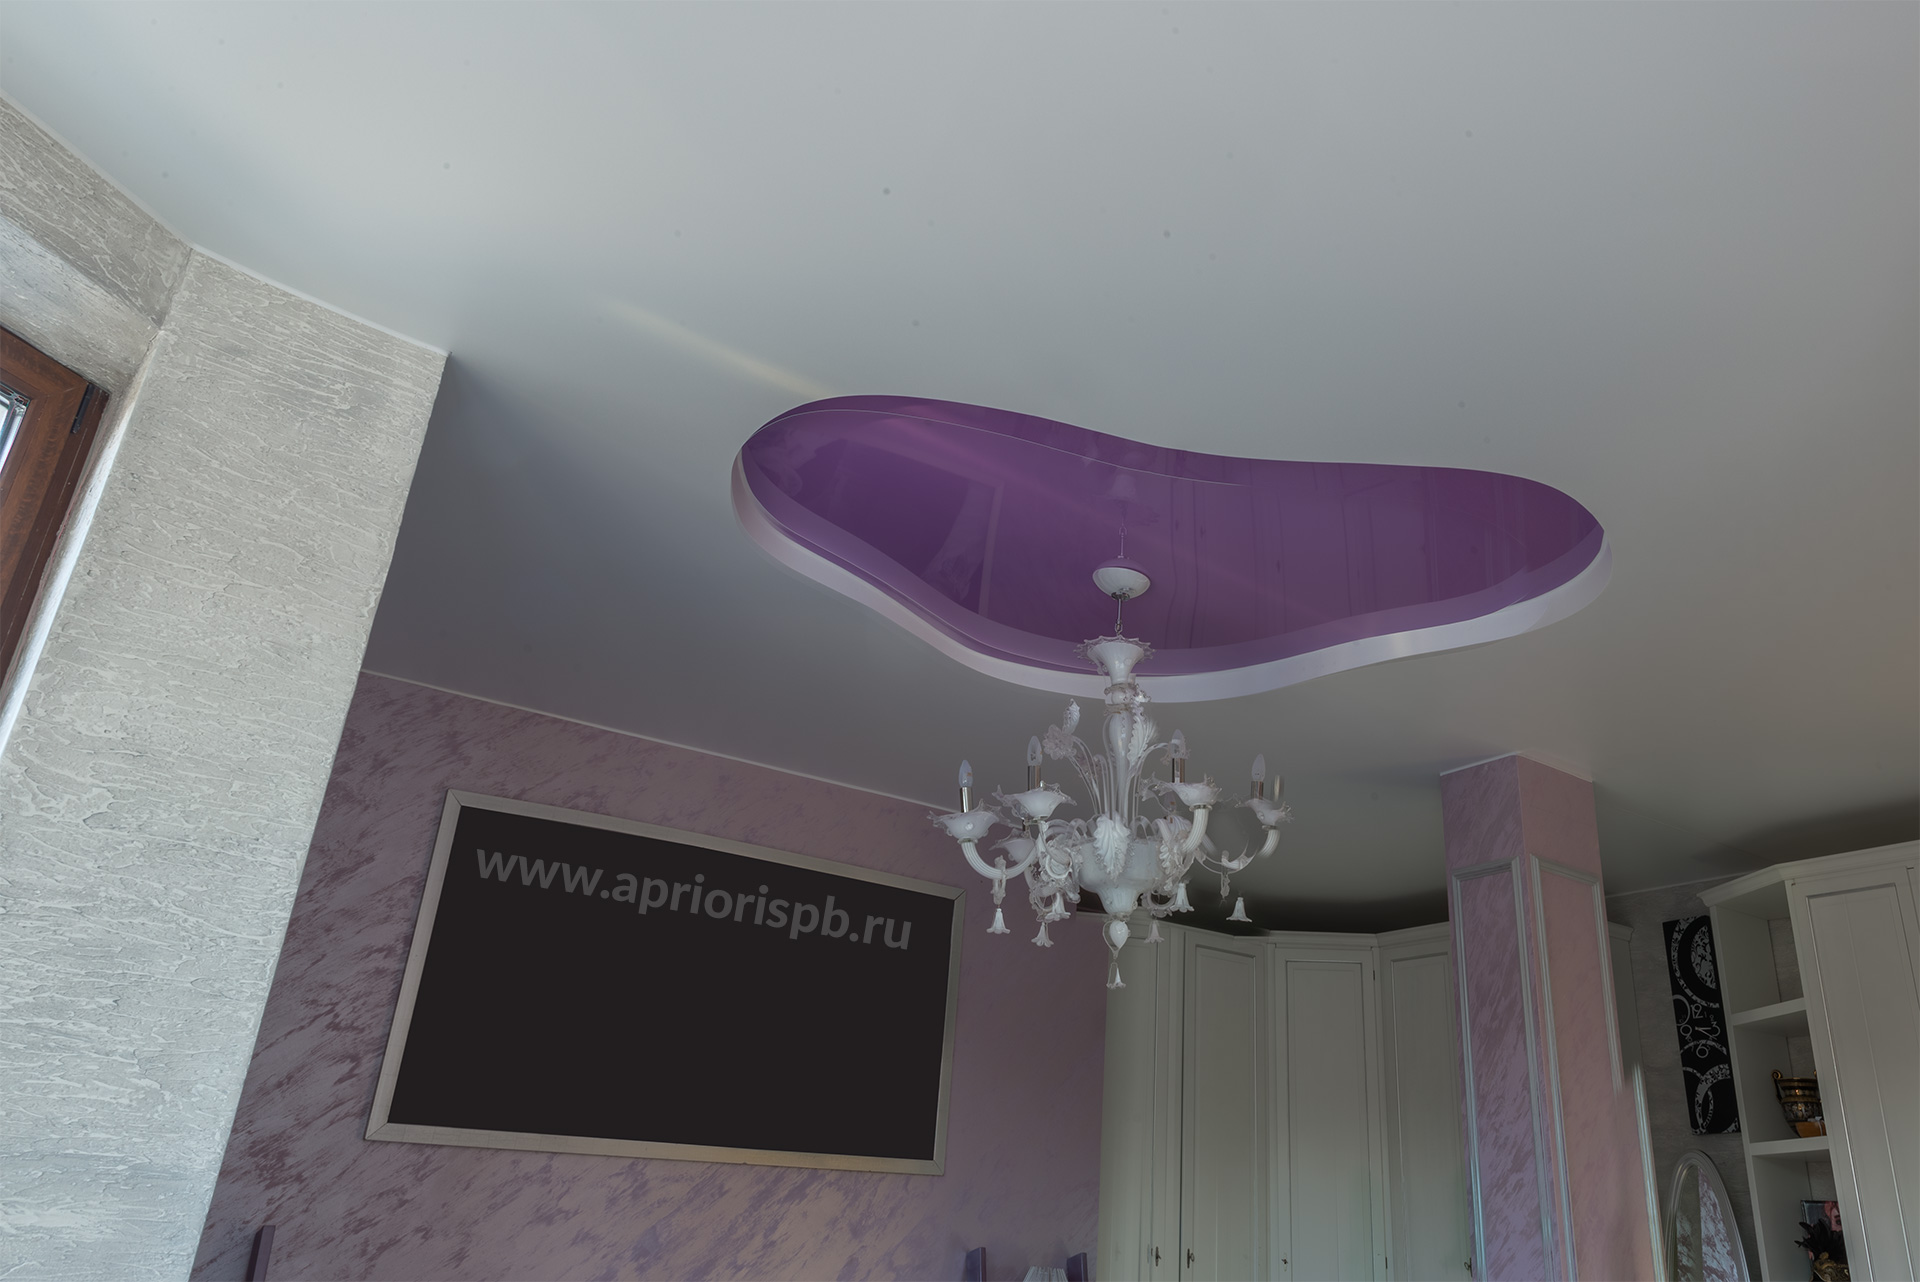 Двухуровневый ПВХ потолок с подсветкой, потолок в спальне, натяжной потолок, фиолетовй, розовый, двухуровневый, натяжные потолки в спб, санкт-петербург, априори